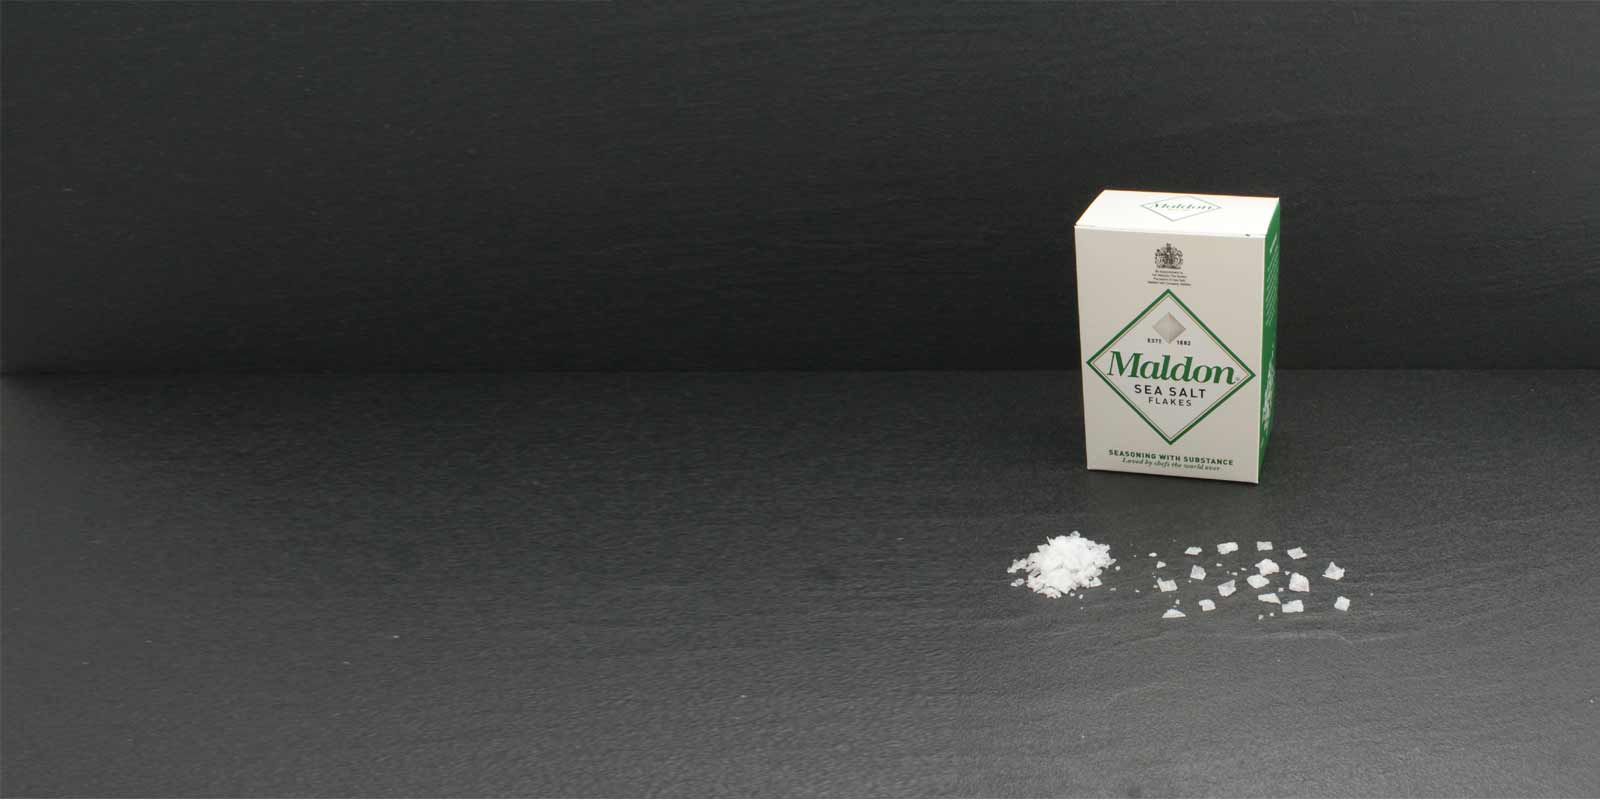 Krystaly maldonskej morskej soli Charakteristicke krystaliky soli v tvare pyramidy su extremne tenke a daju sa lahko rozotriet medzi prstami na ochutenie. Cennu sol ziskava spolocnost Maldon Sea Salt Company, jedina spolocnost na tazbu soli v Anglicku. Maly rodinny podnik spracovava a predava sol uz od roku 1882. Morska sol Maldon je dostupna len v obmedzenom mnozstve.